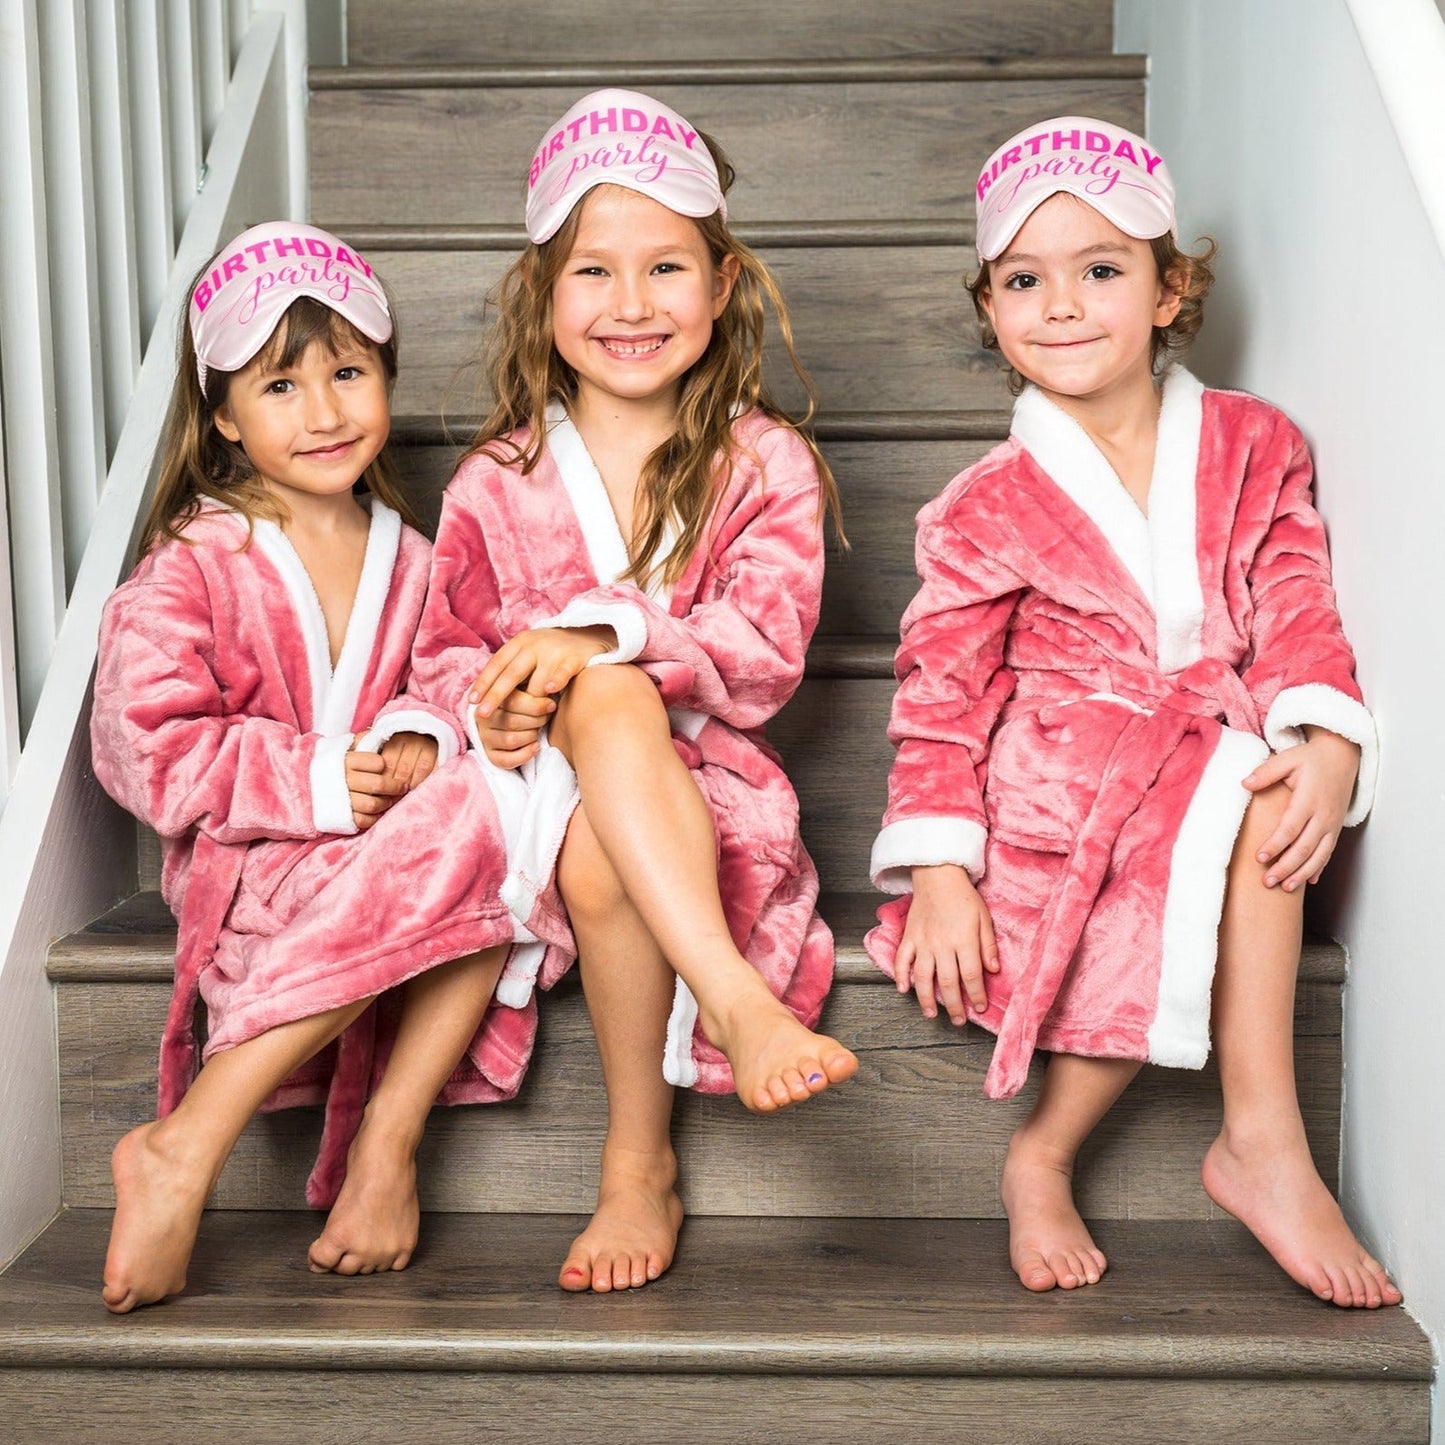 Custom Kids Plush Birthday Spa Bathrobes - kids bathrobes